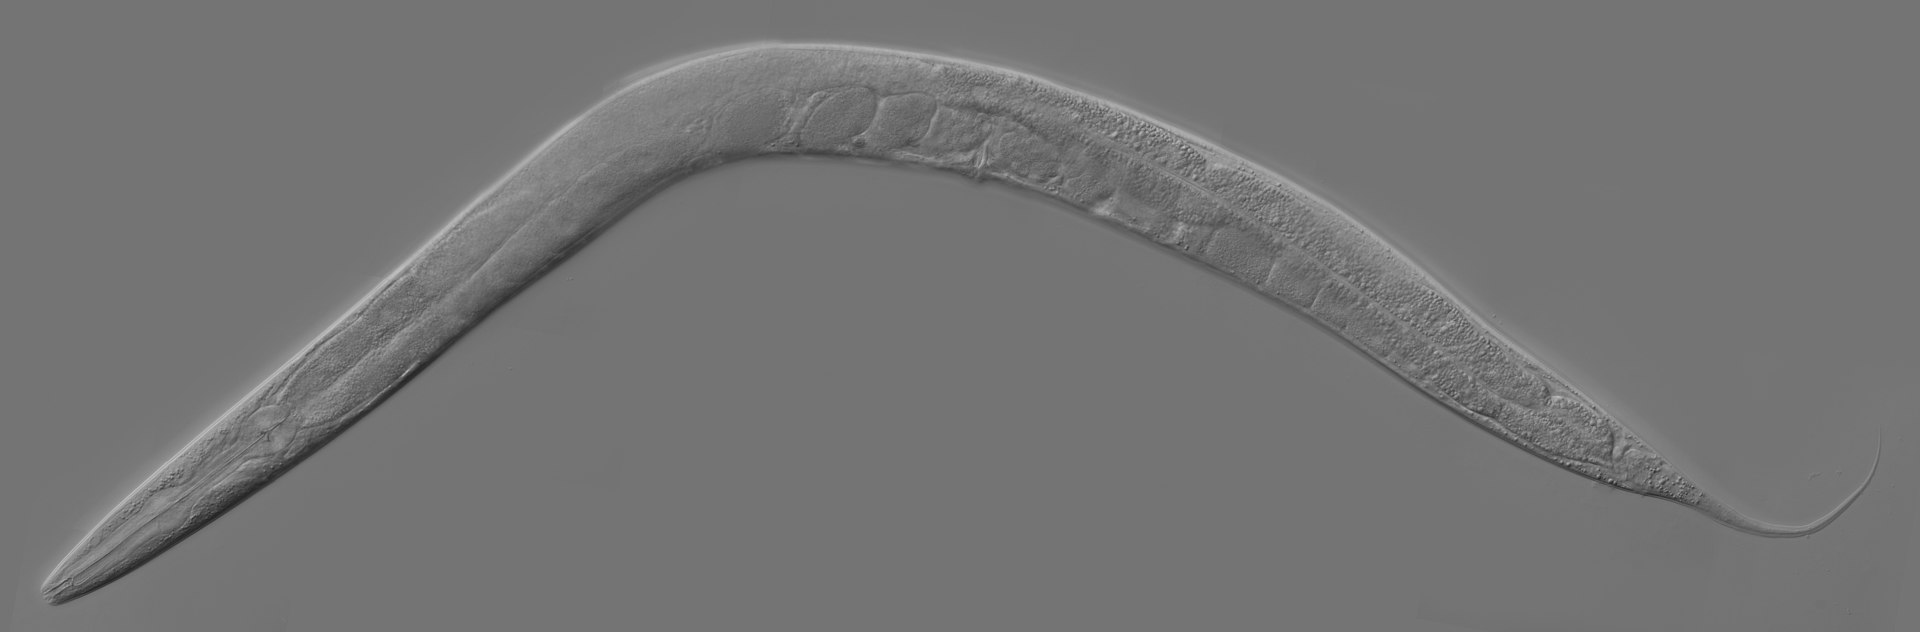 C. elegans の写真